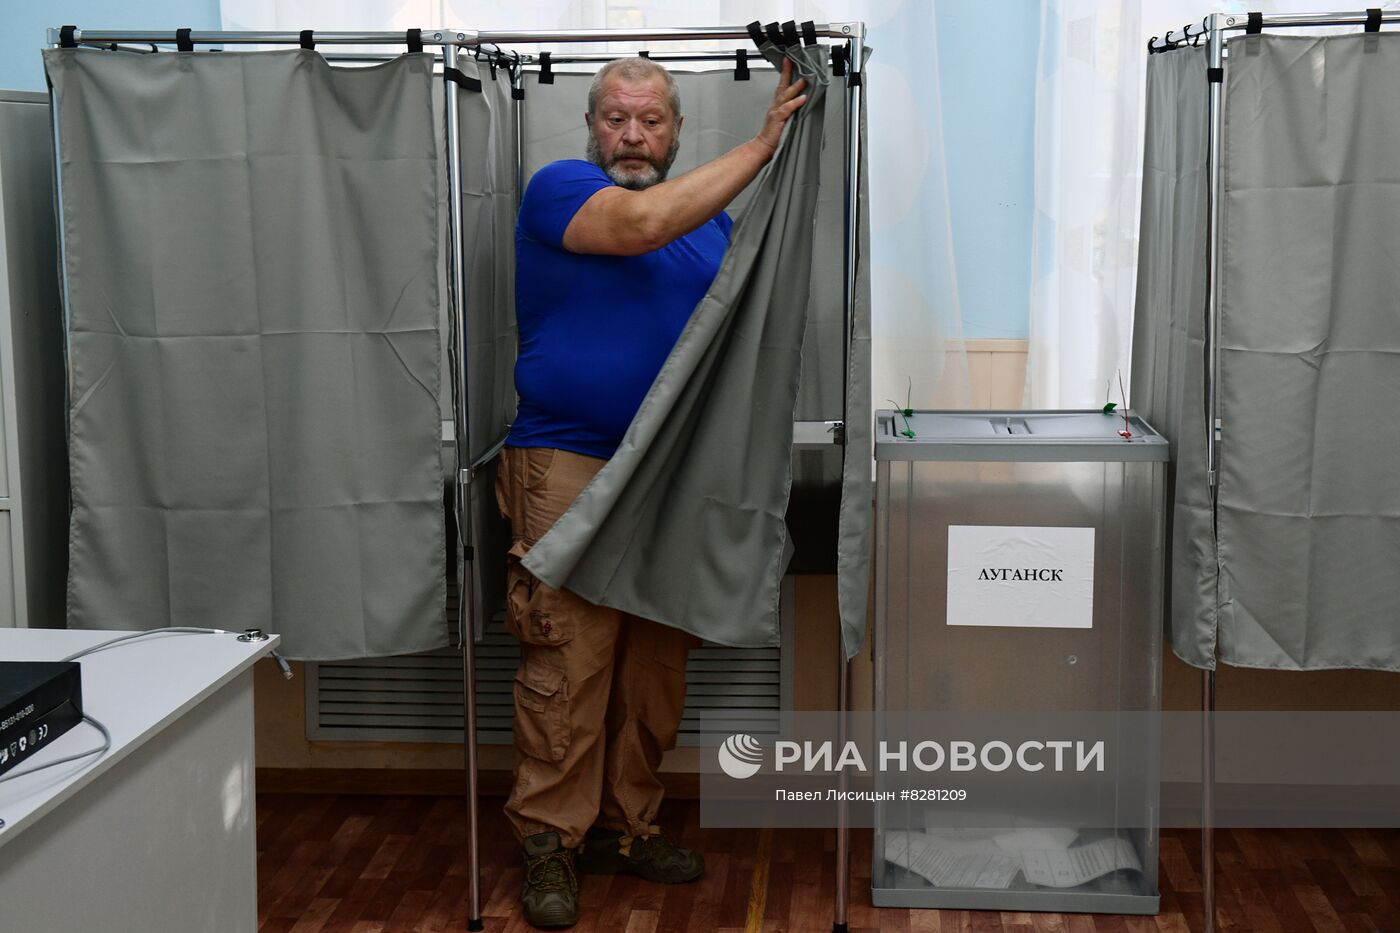 Голосование на референдумах о присоединении к РФ